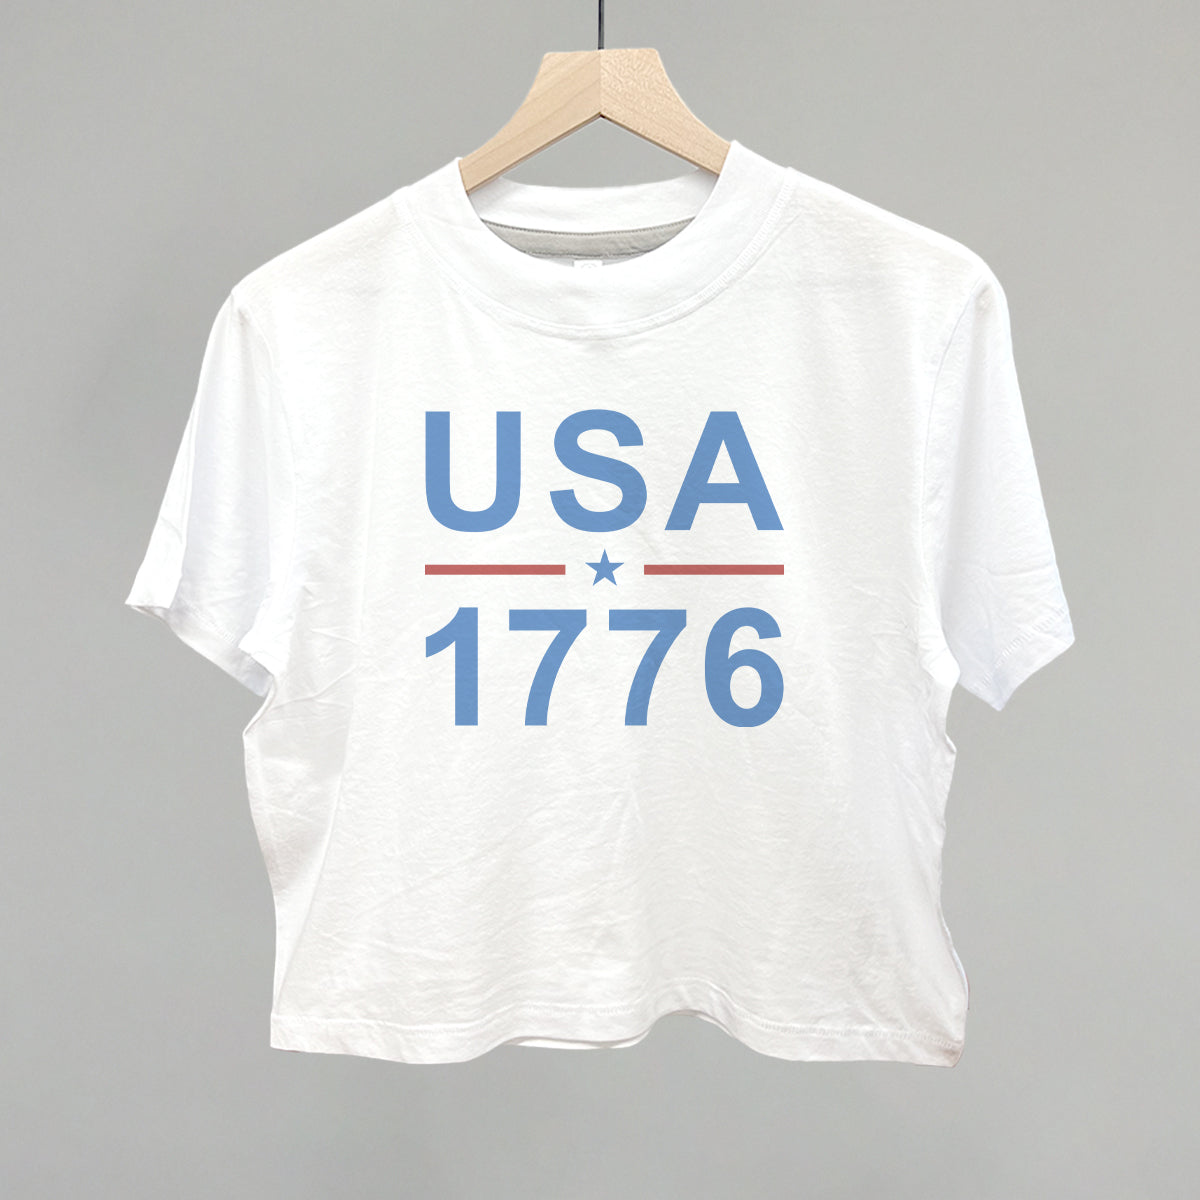 USA 1776